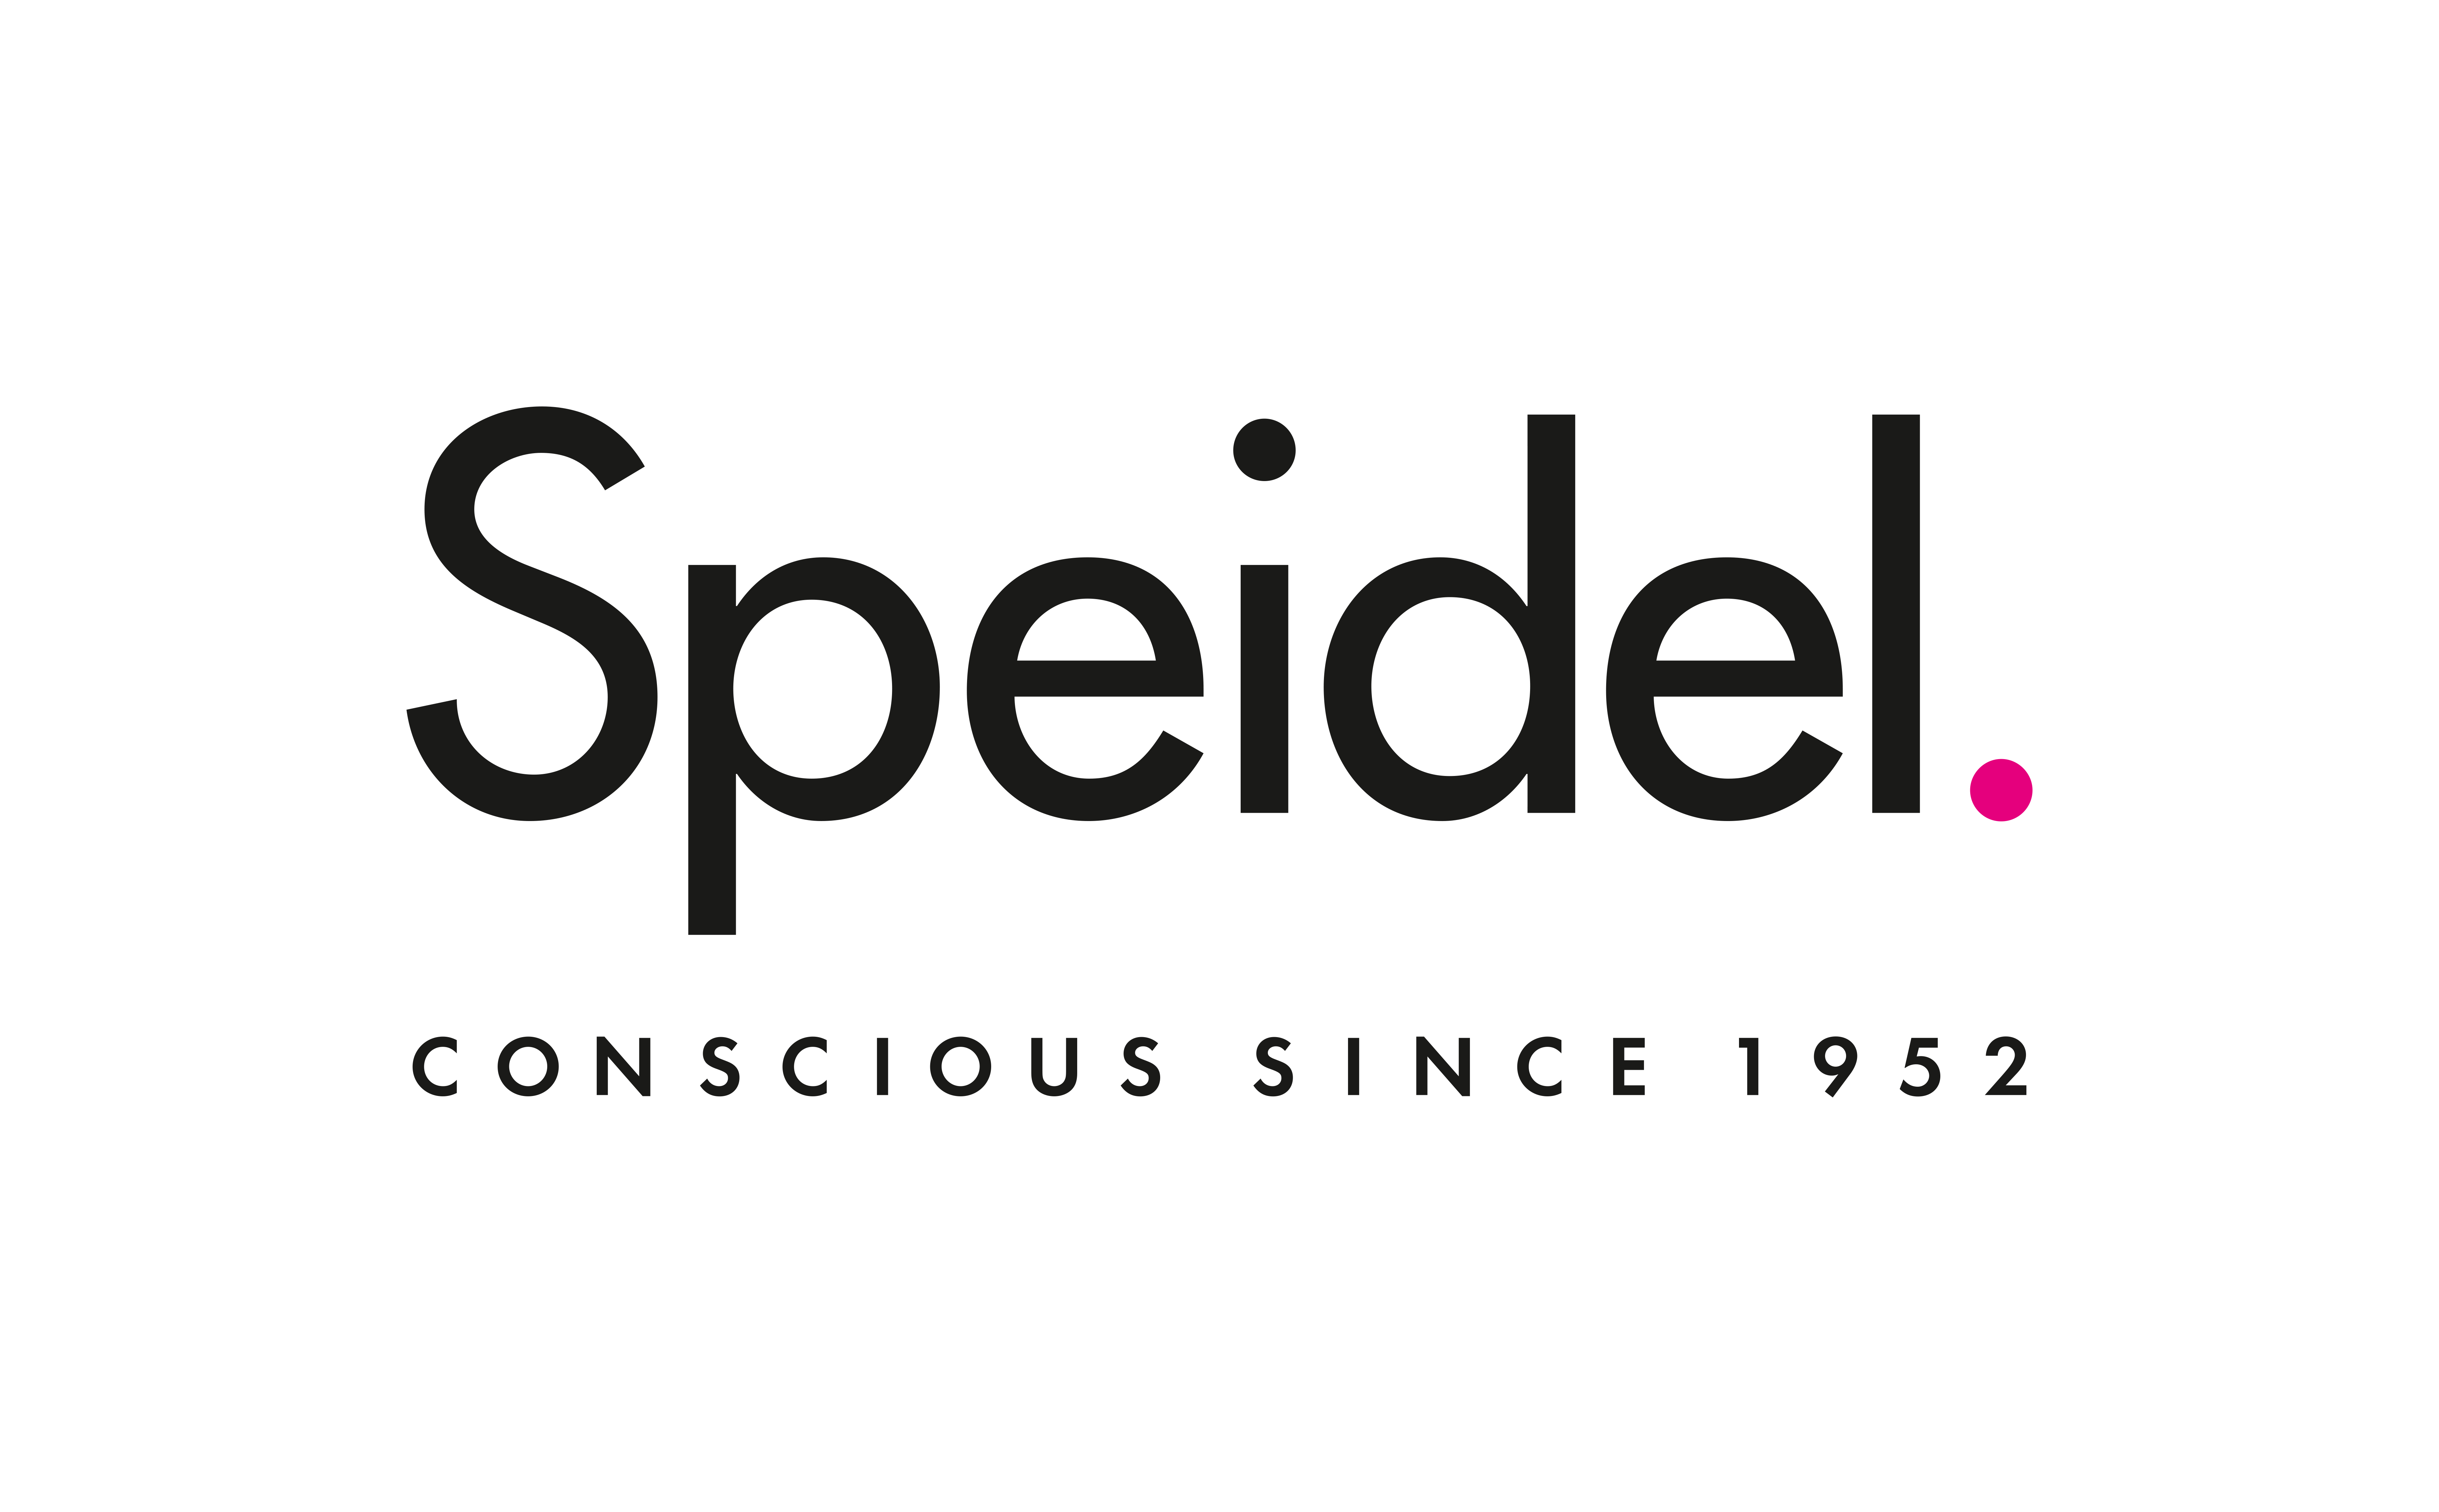 Brand logo for Speidel